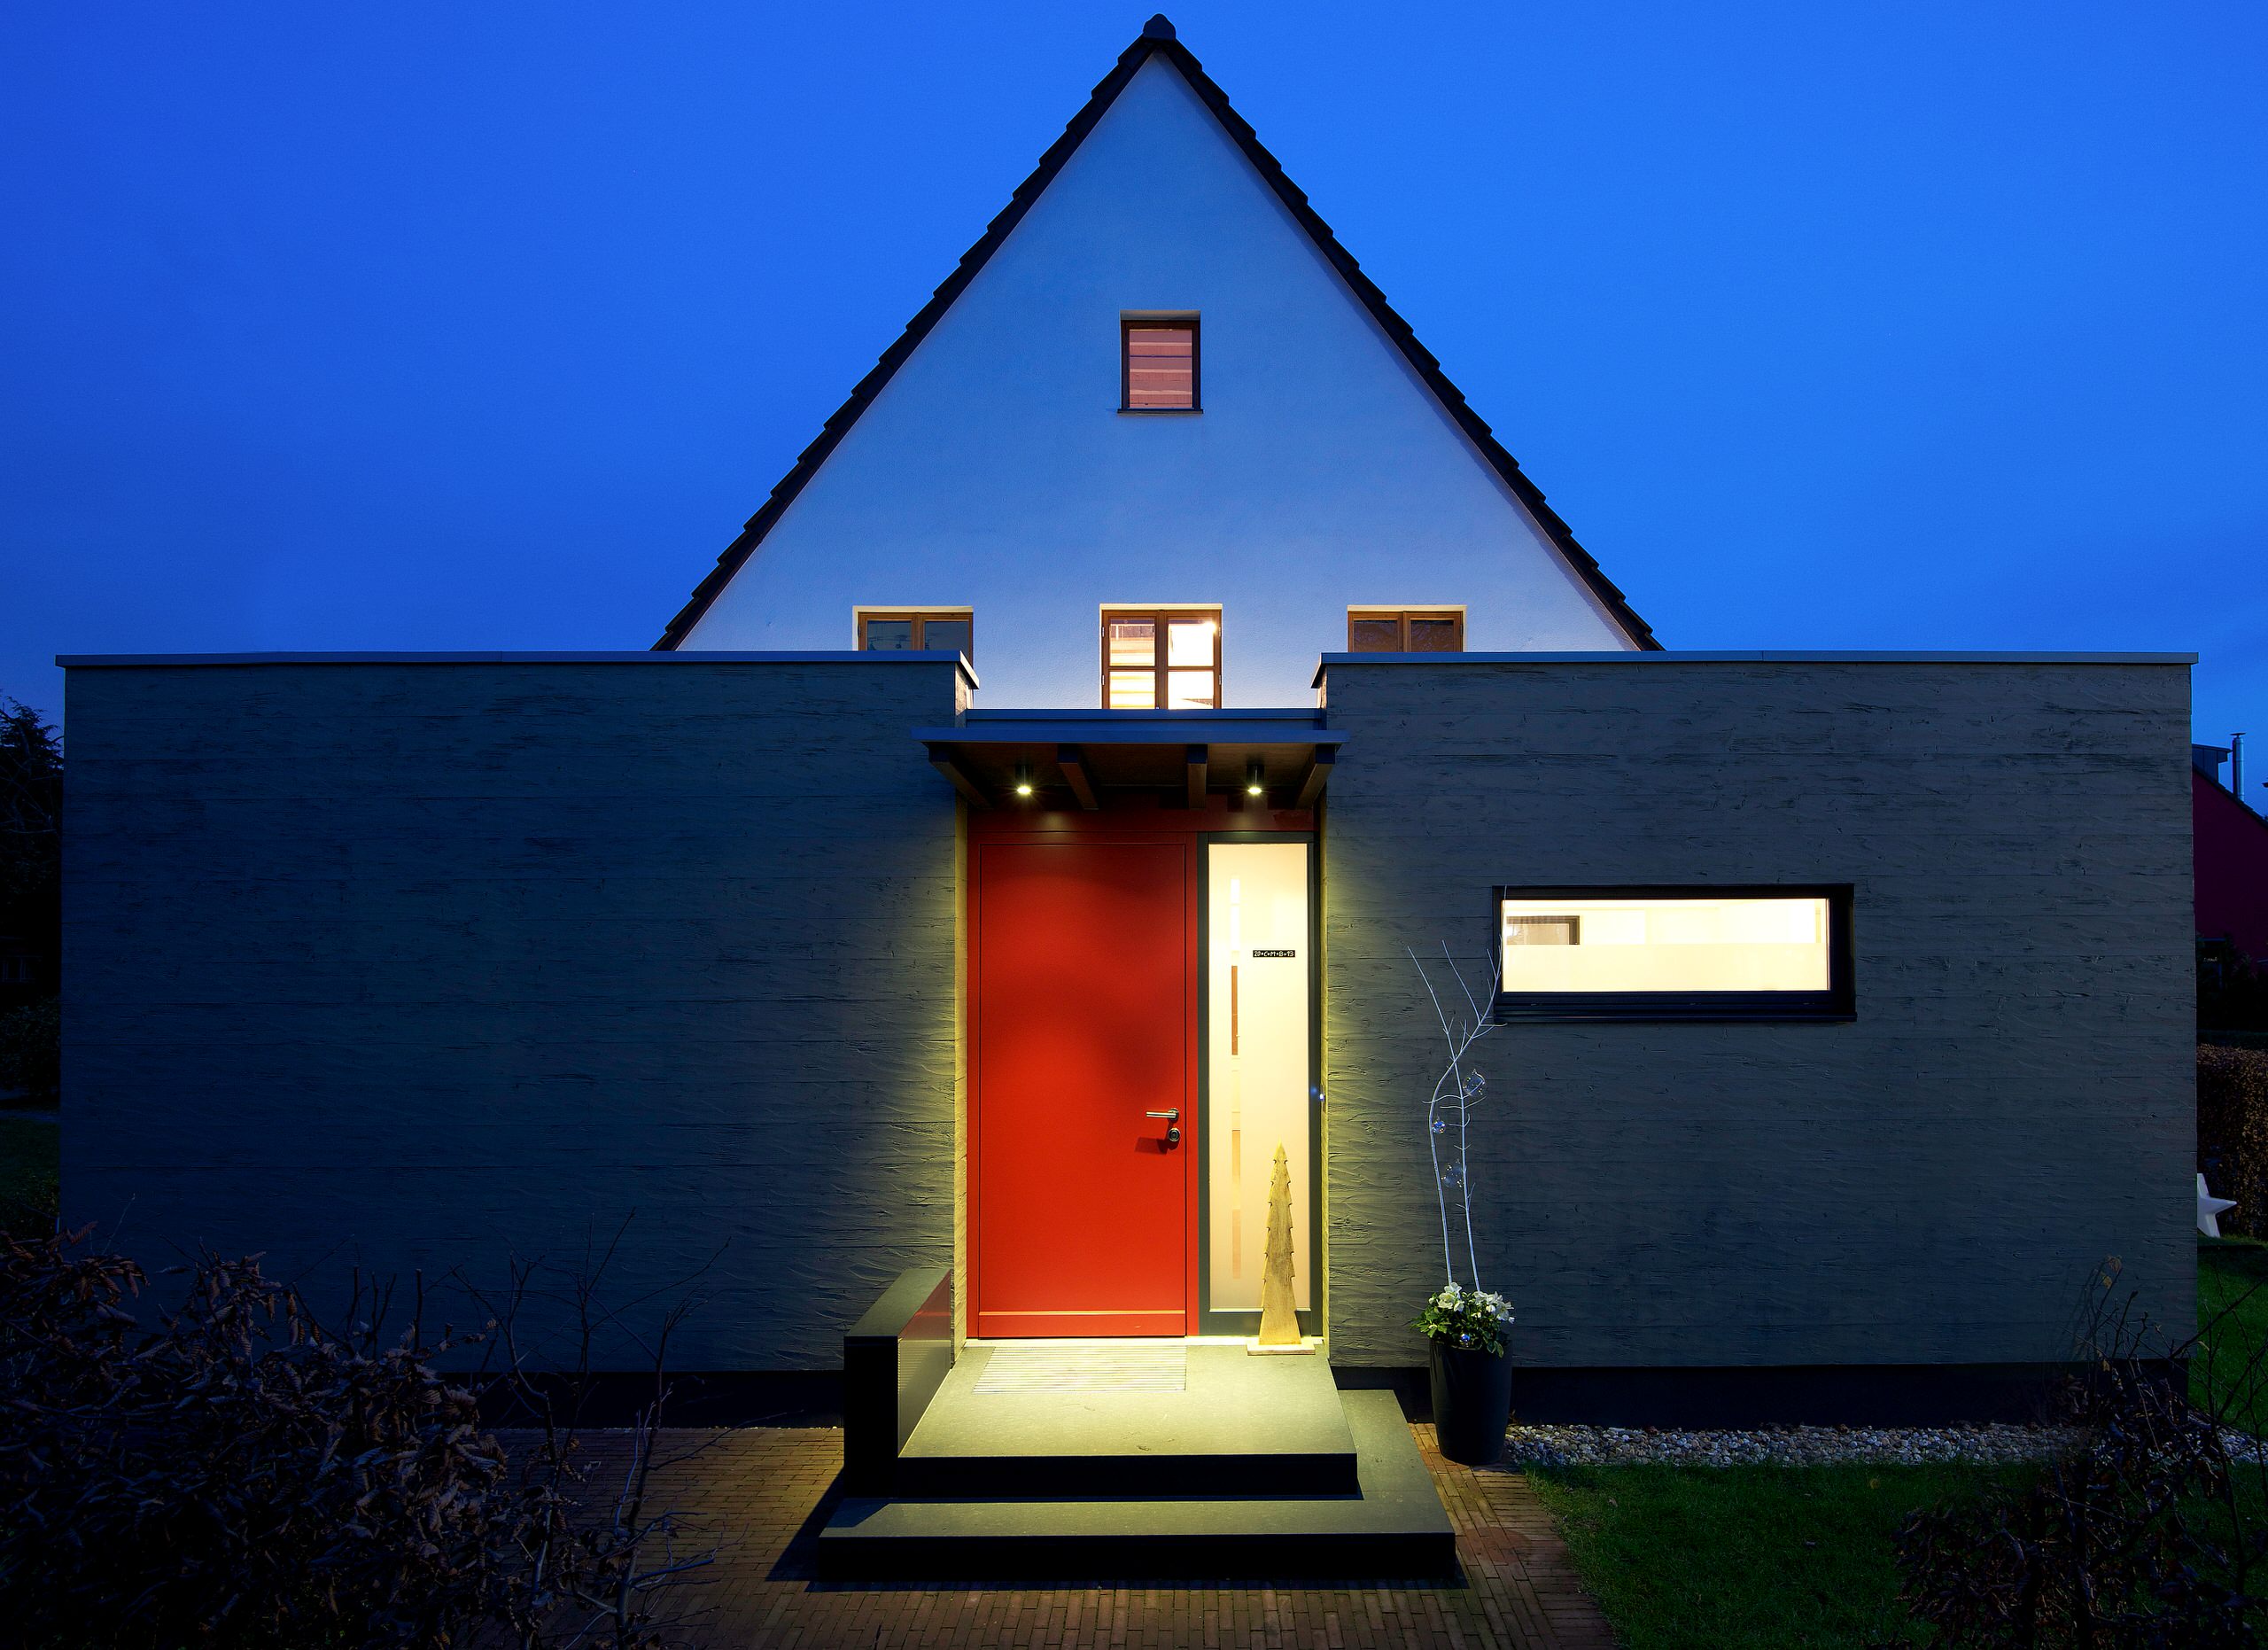 Aрхитектура: 8 пристроек к дому, чтобы увеличить площадь архитектура,ремонт и строительство